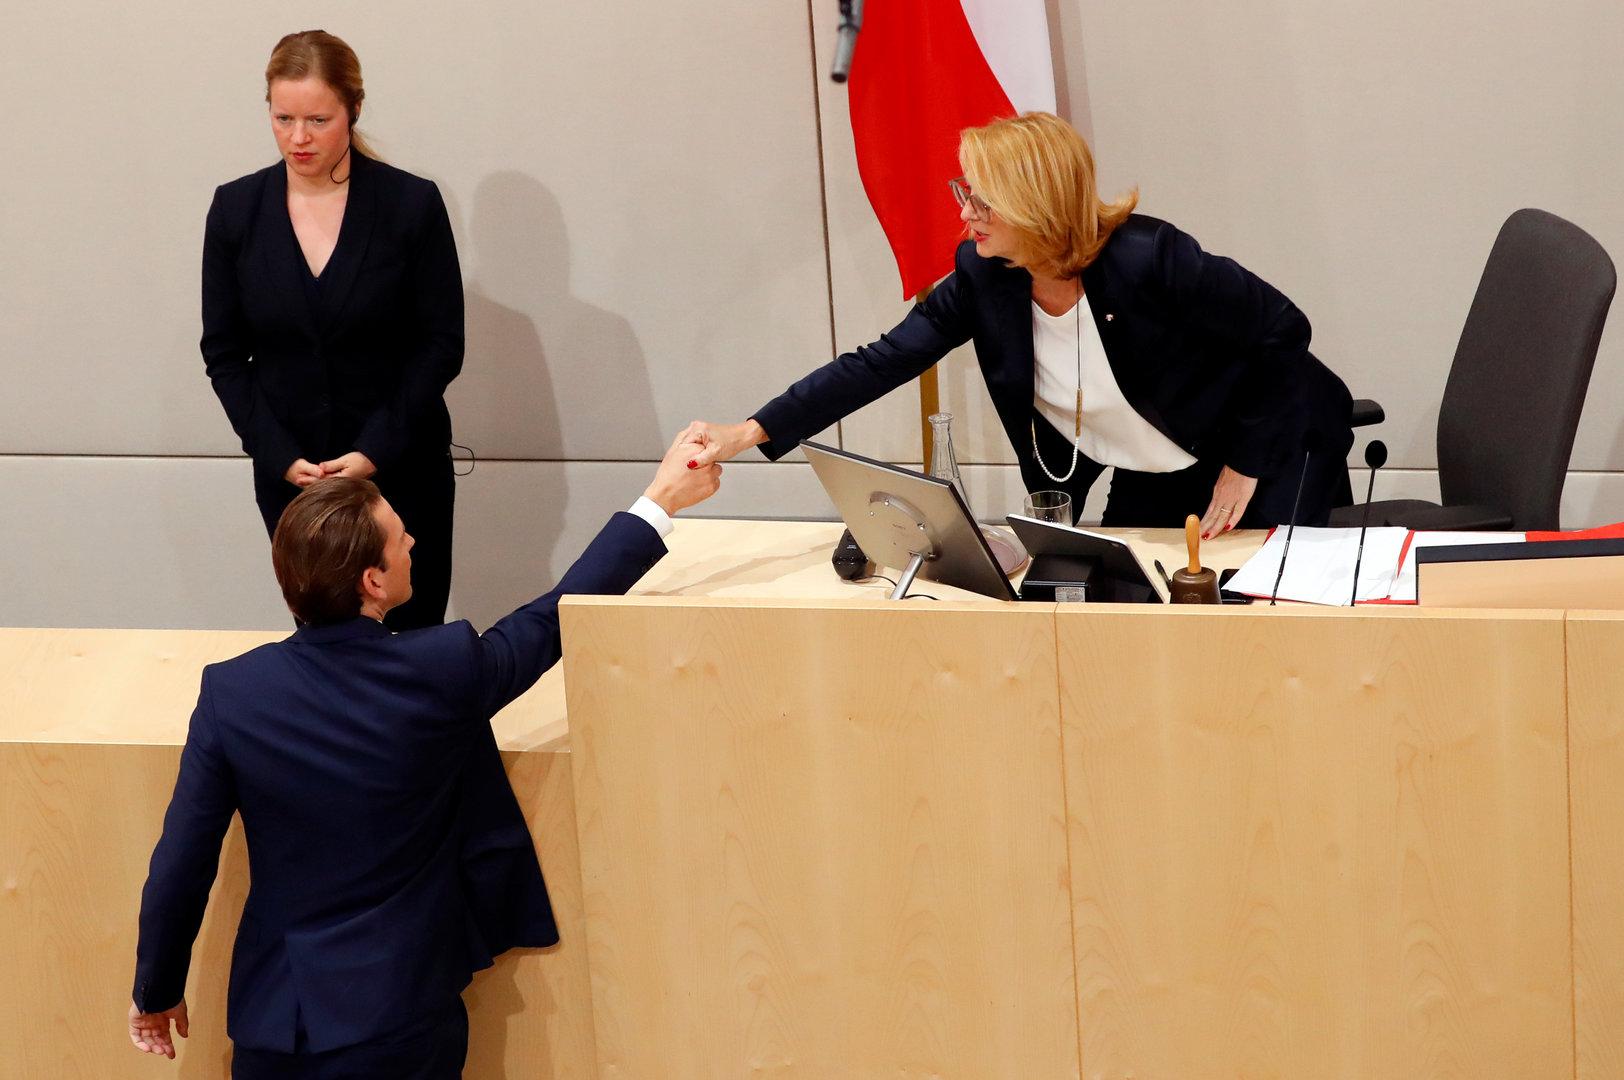 Bures legt gegen Kurz nach, ÖVP beklagt 